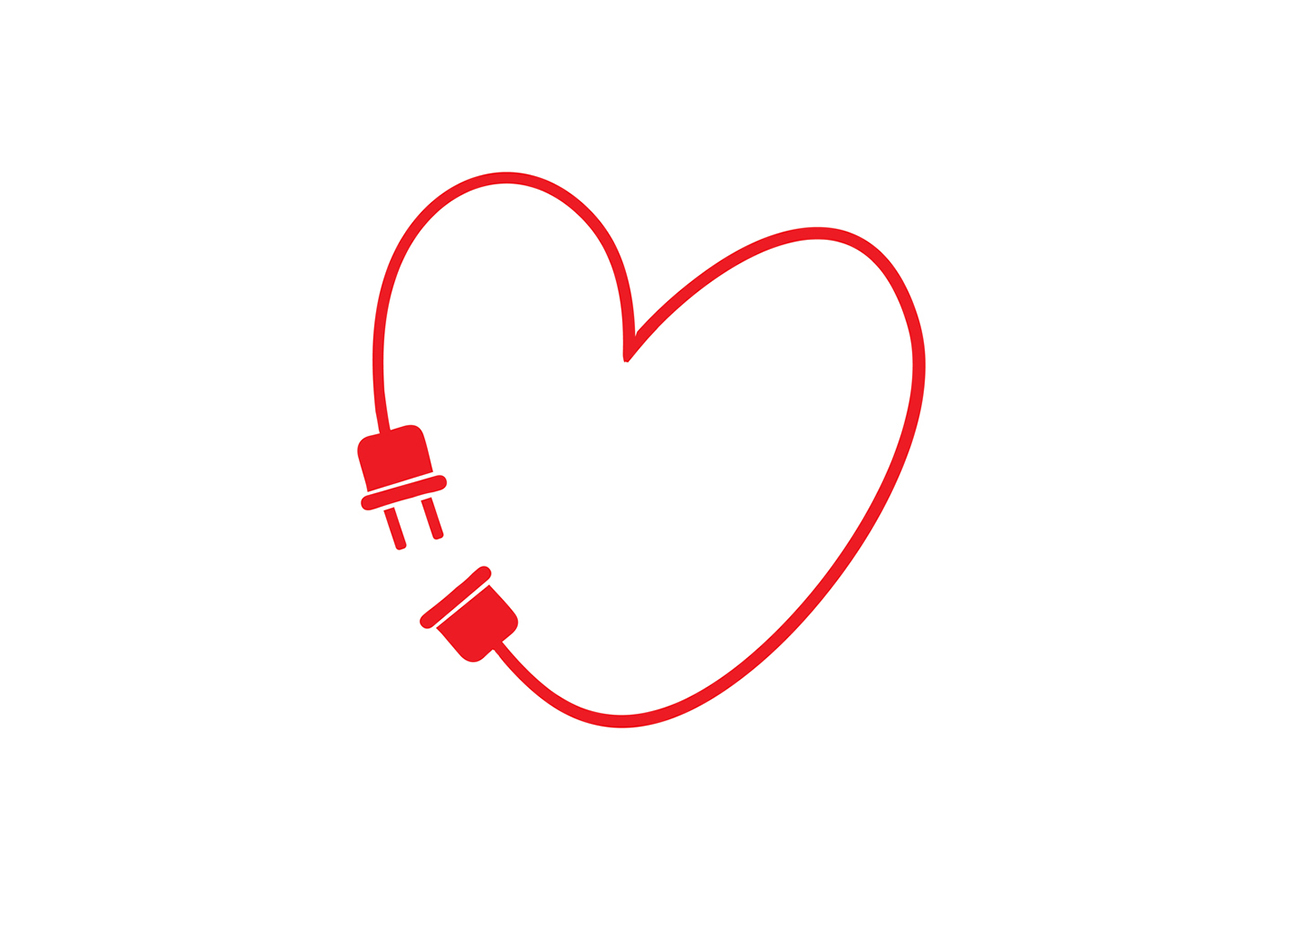 Τι συμπτώματα παρουσιάζει ο καρδιακός αποκλεισμός: Το «ηλεκτρικό» πρόβλημα στην καρδιά